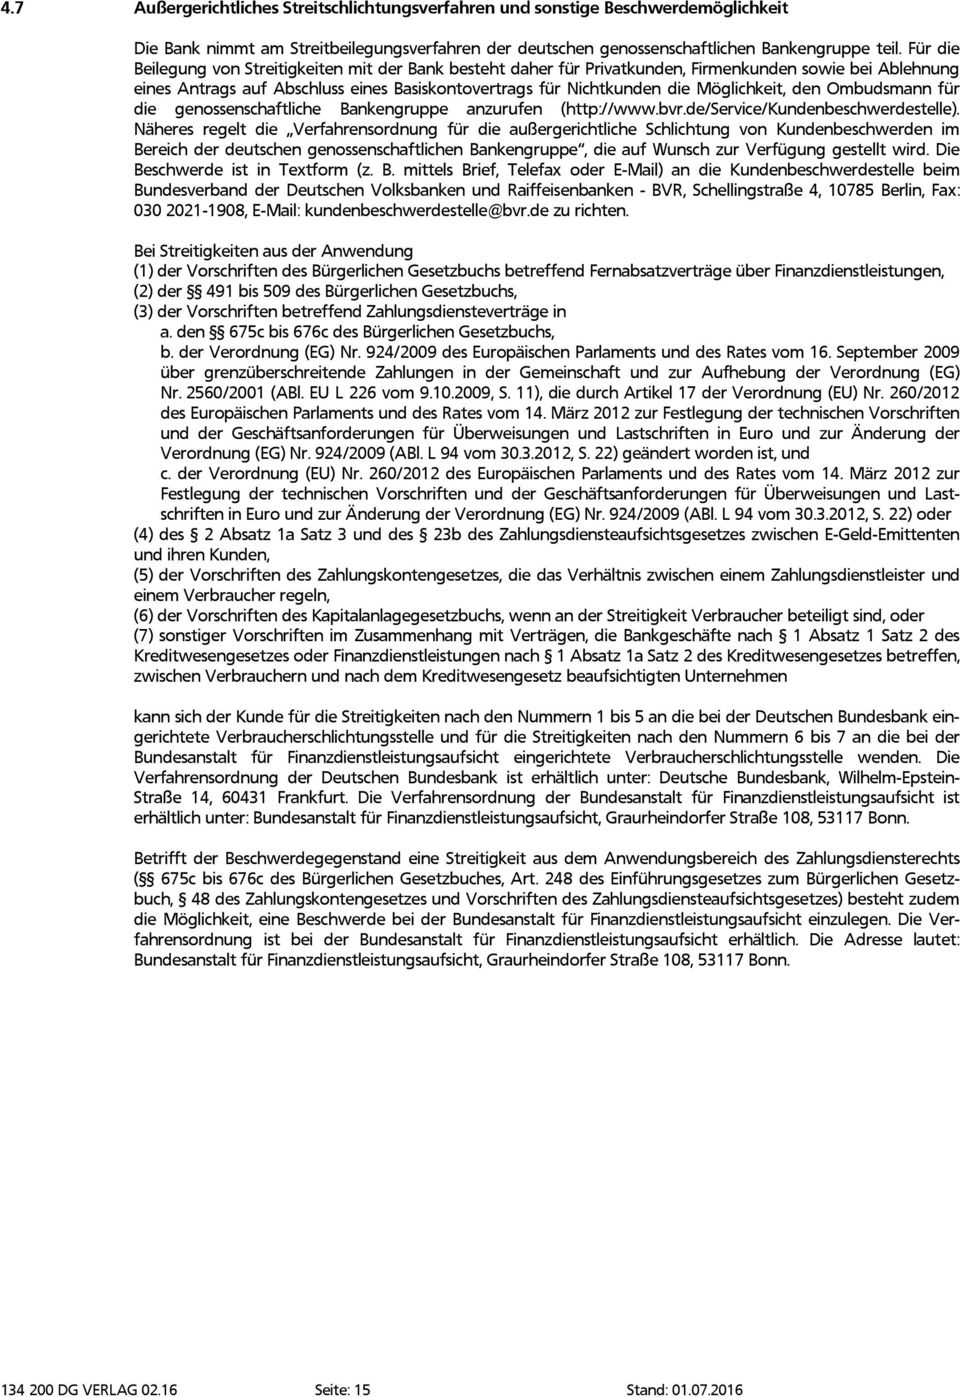 Möglichkeit, den Ombudsmann für die genossenschaftliche Bankengruppe anzurufen (http://www.bvr.de/service/kundenbeschwerdestelle).